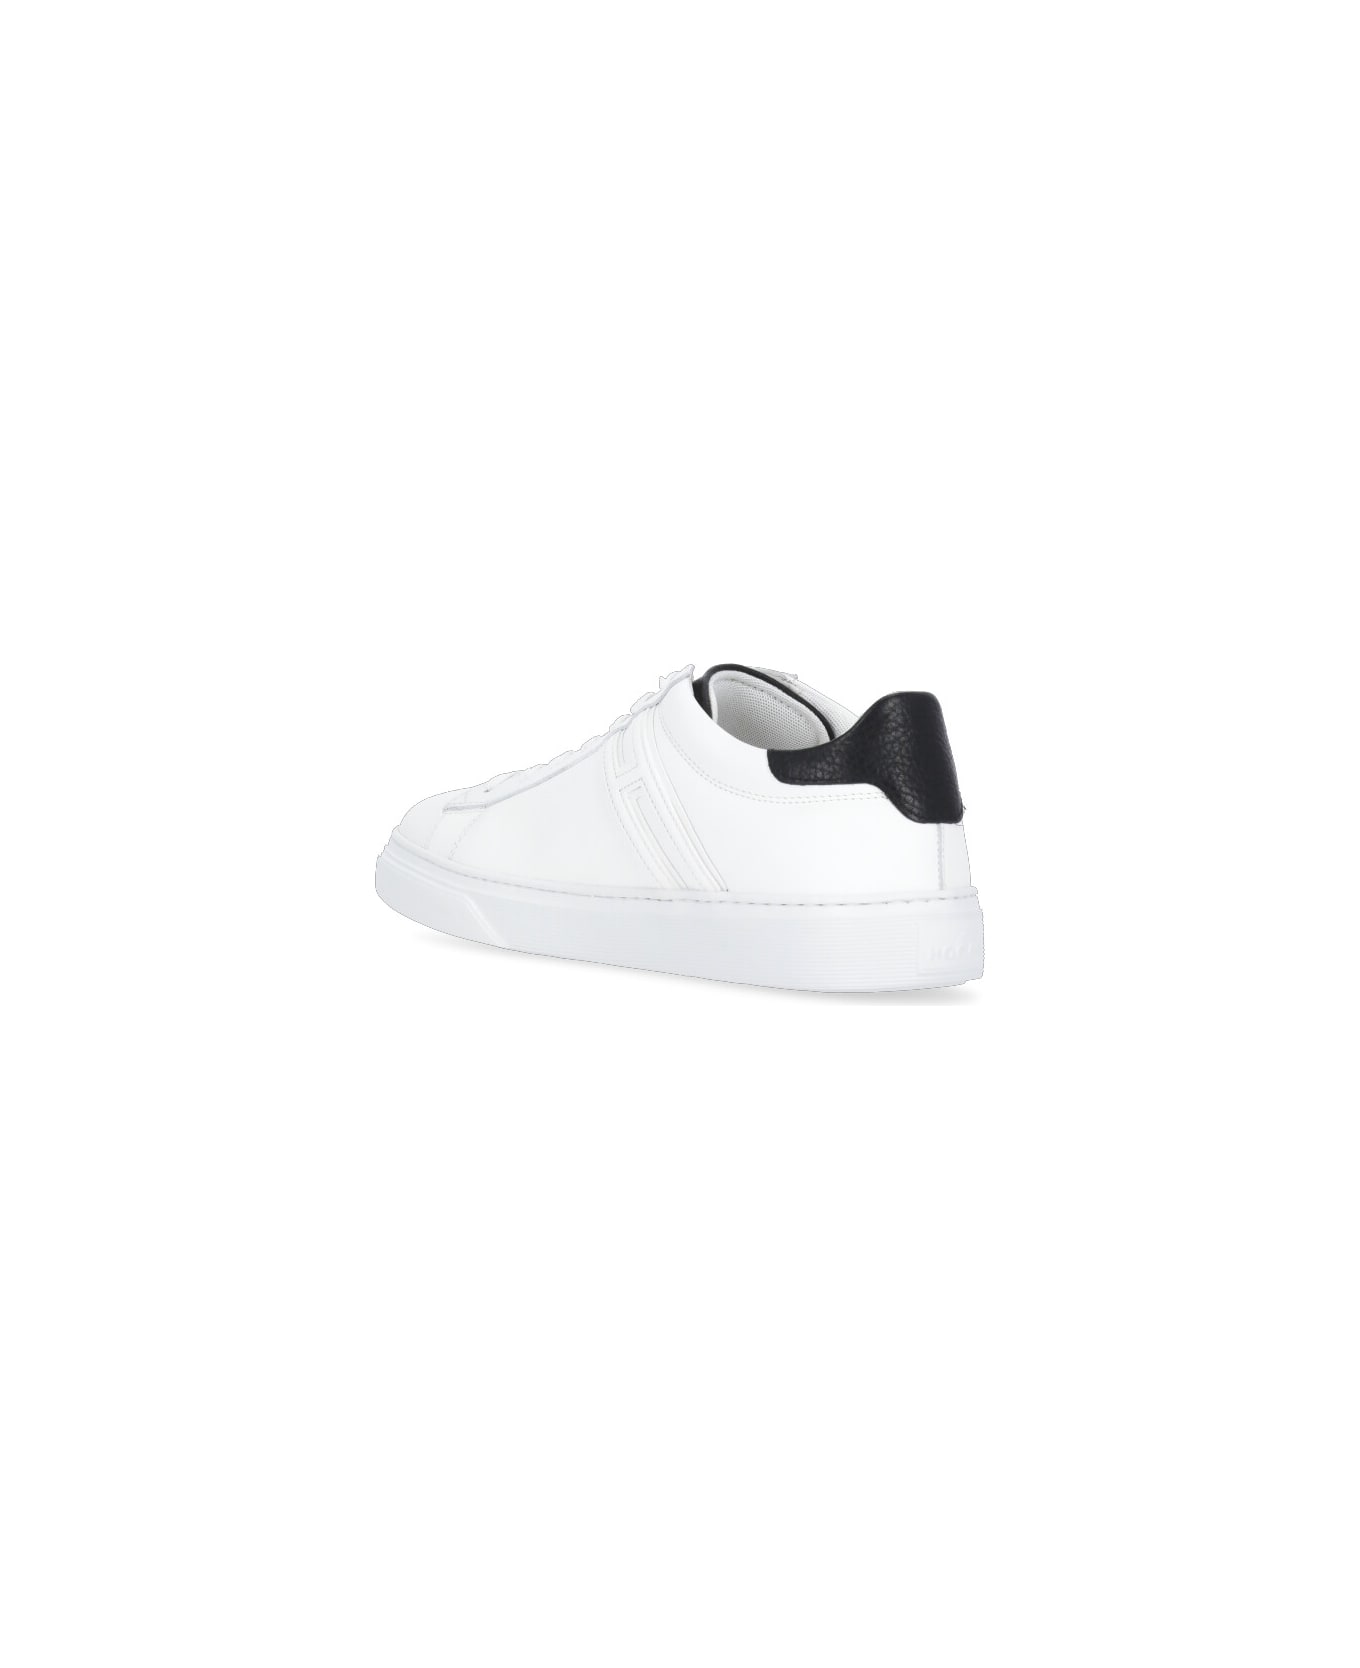 Hogan H365 Sneakers - White スニーカー